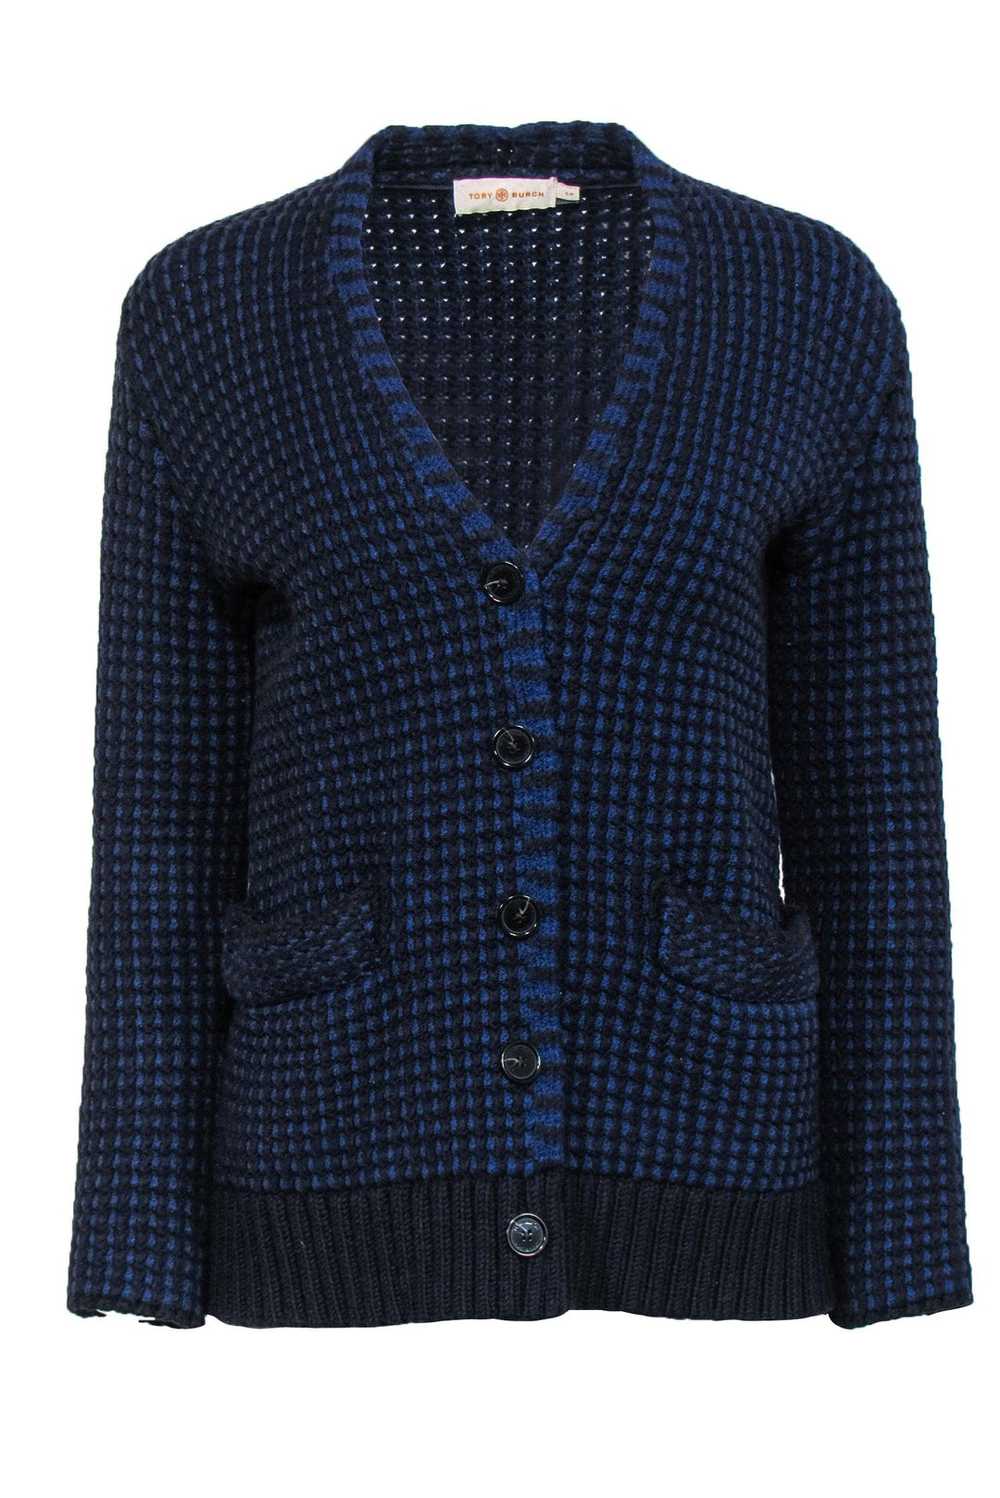 Tory Burch - Blue & Black Waffle Knit Merino Wool… - image 1